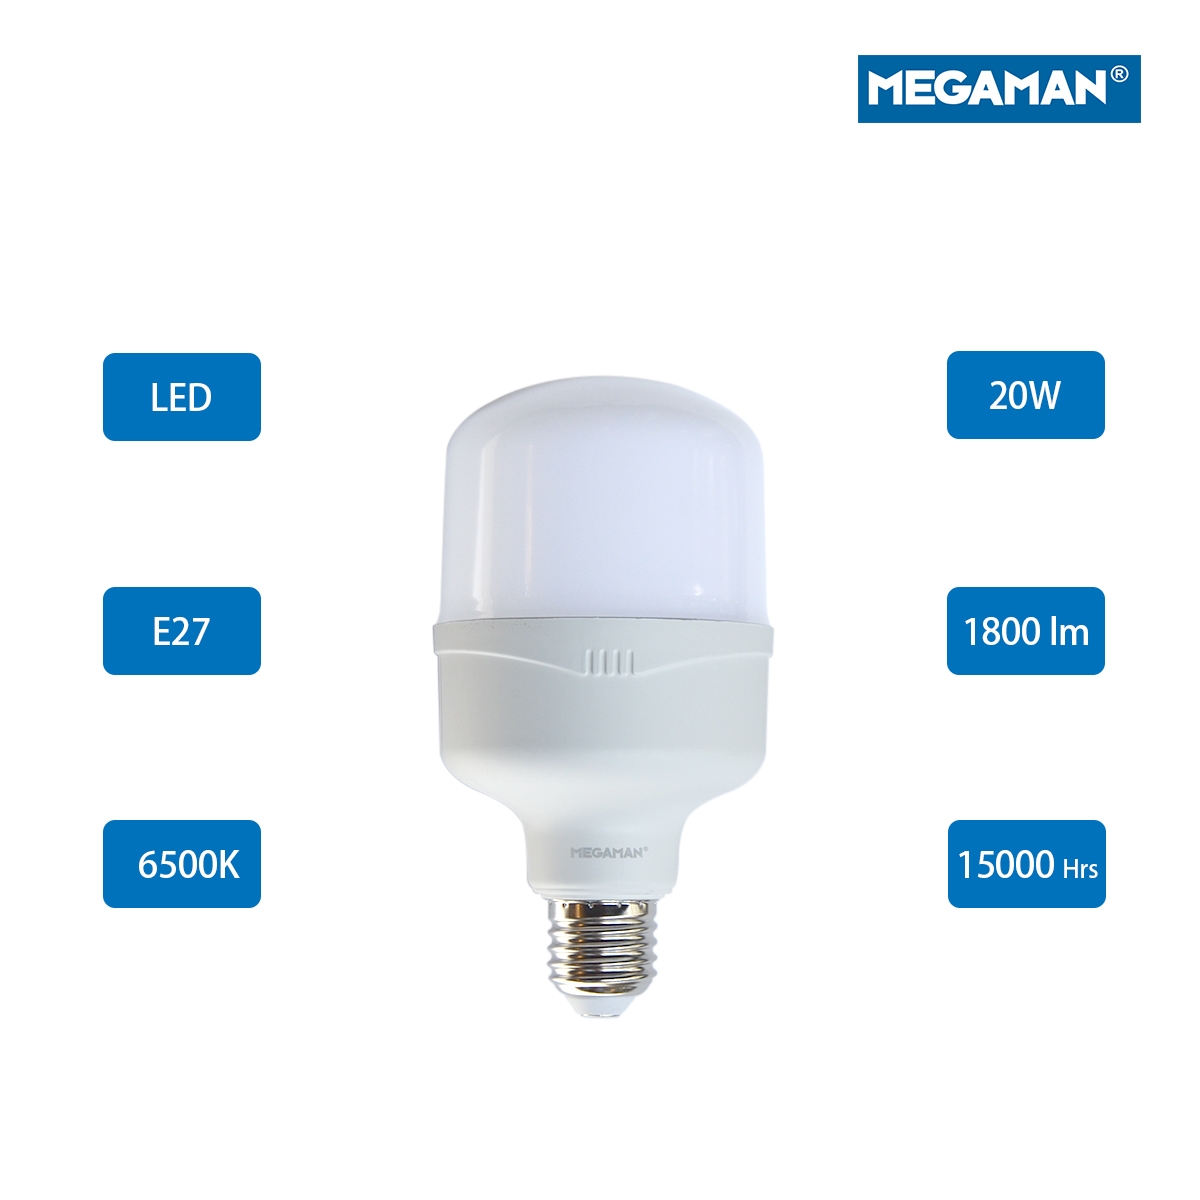 Megaman LED T-Lamp E27 YTT80Z1 20W 6500K -Daylight